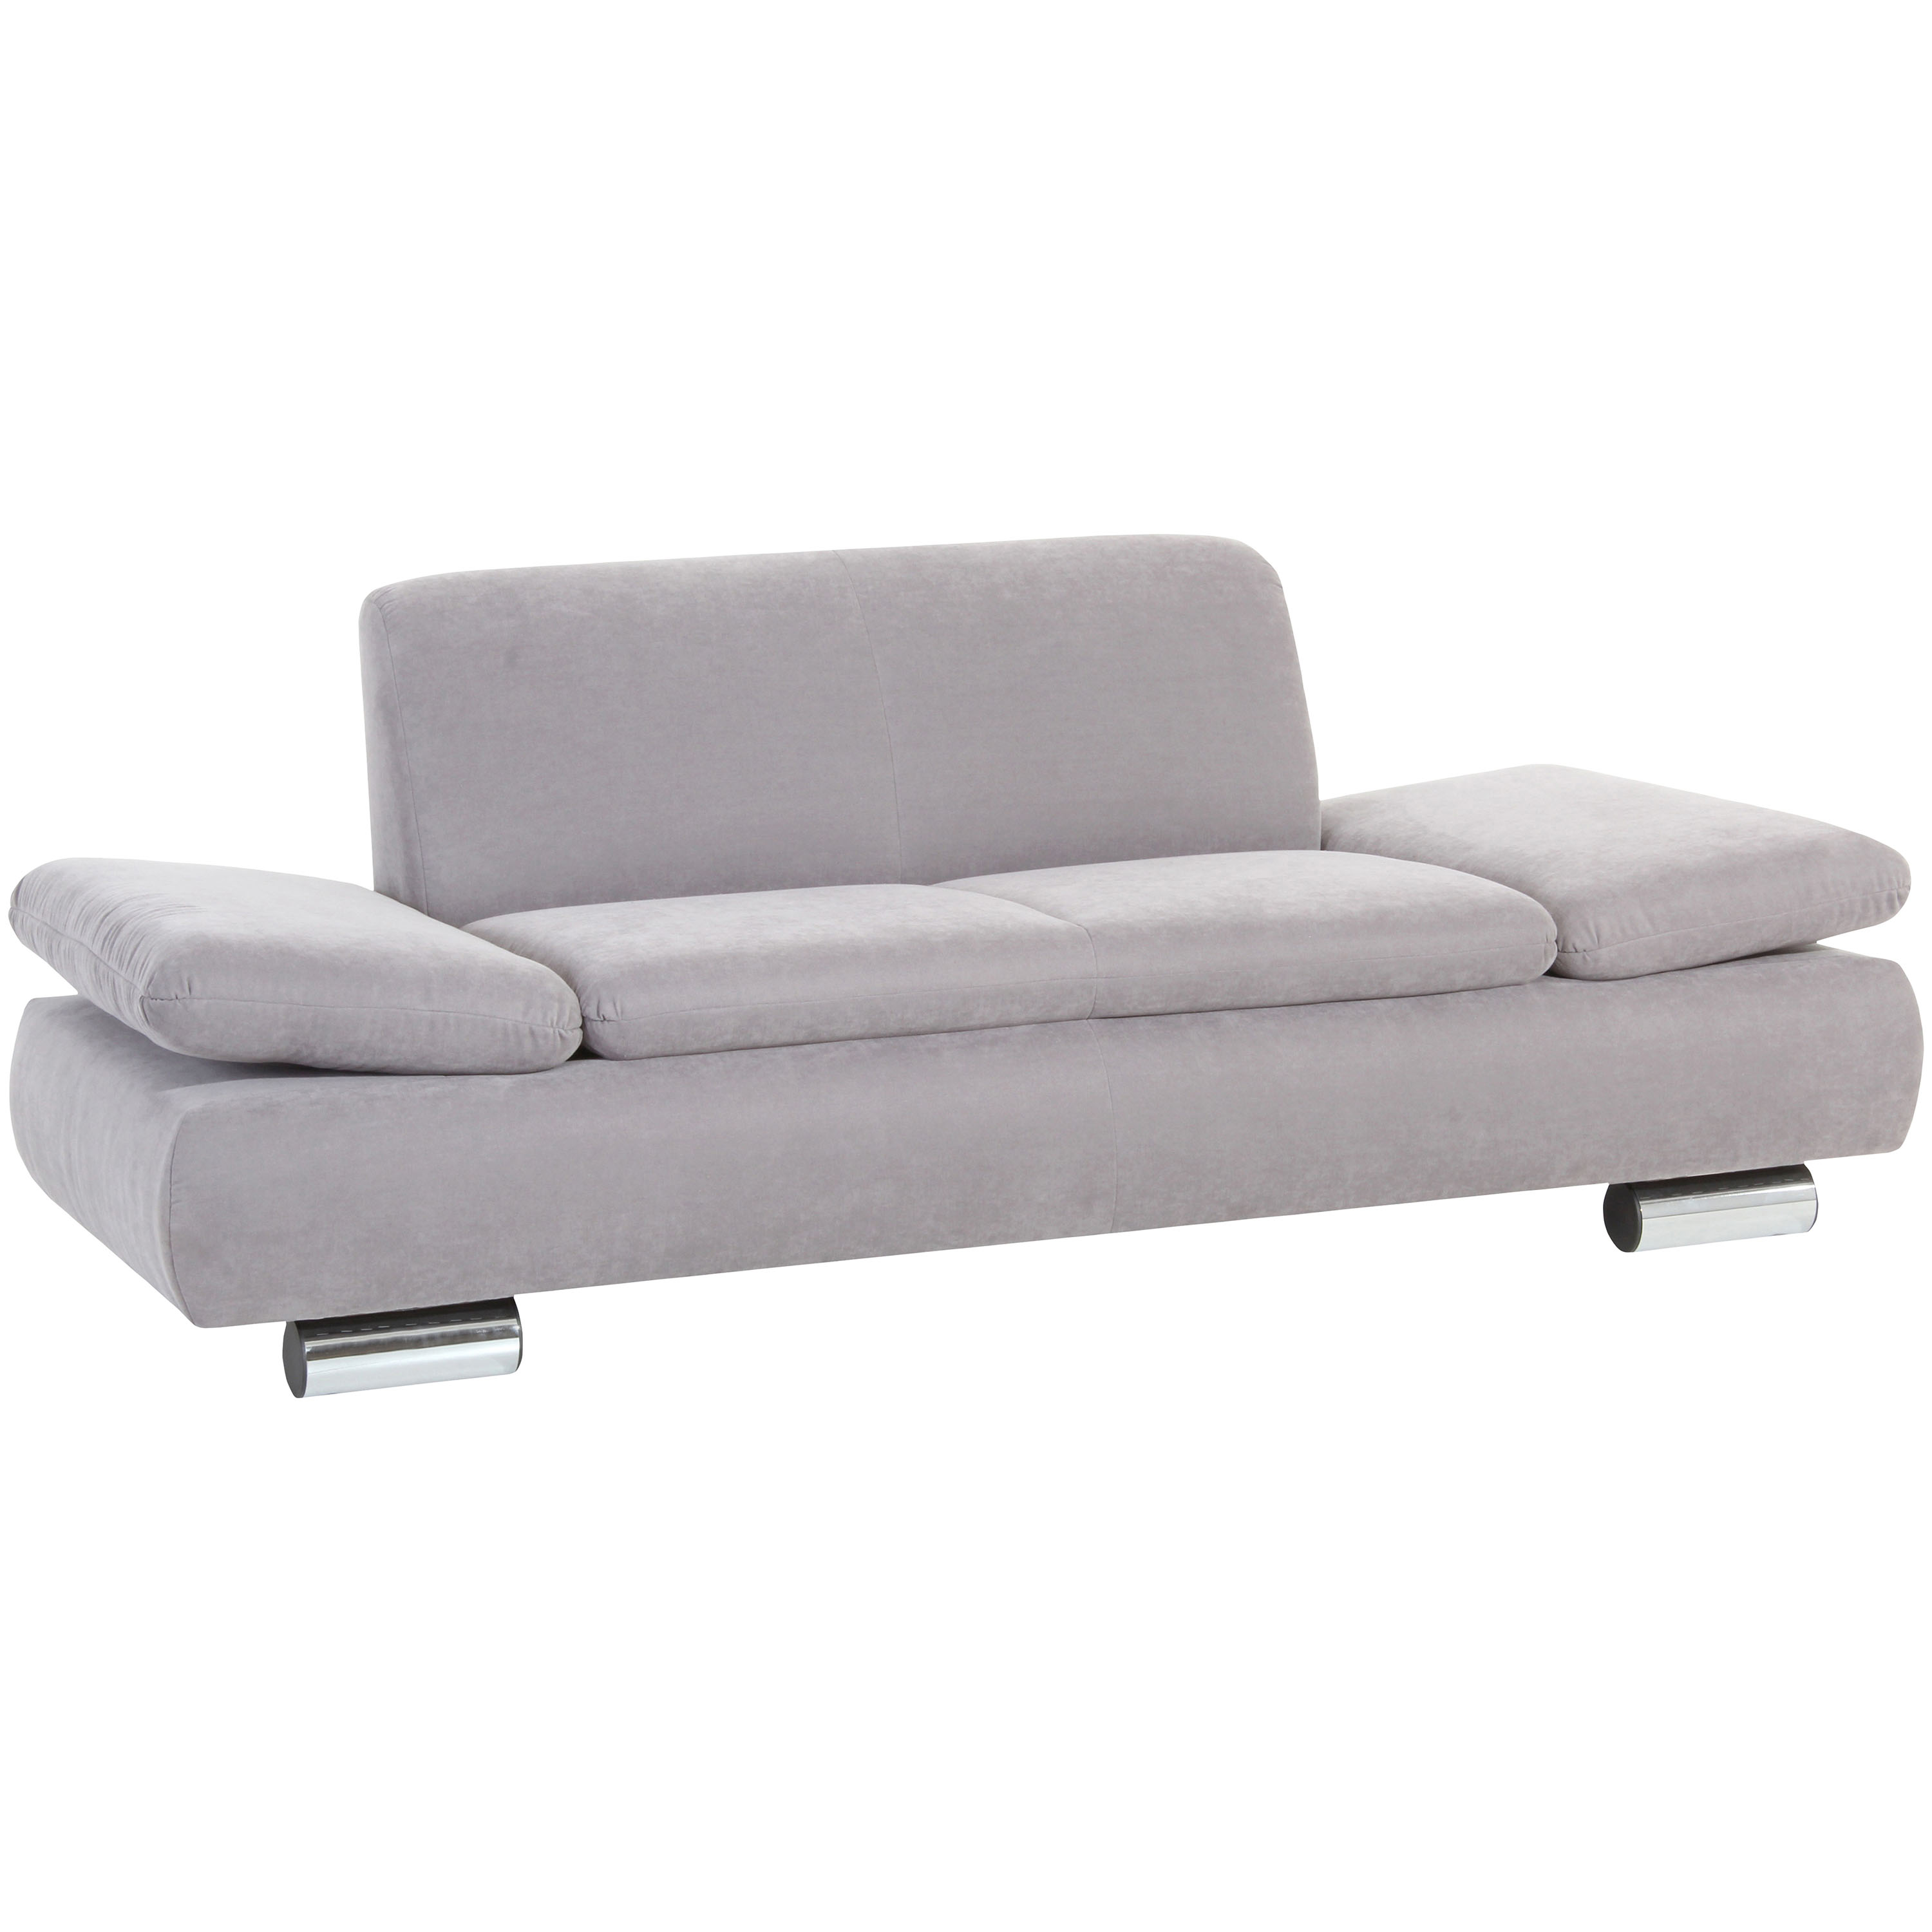 formschönes 2-sitzer sofa in silber mit verchromten metallfüssen